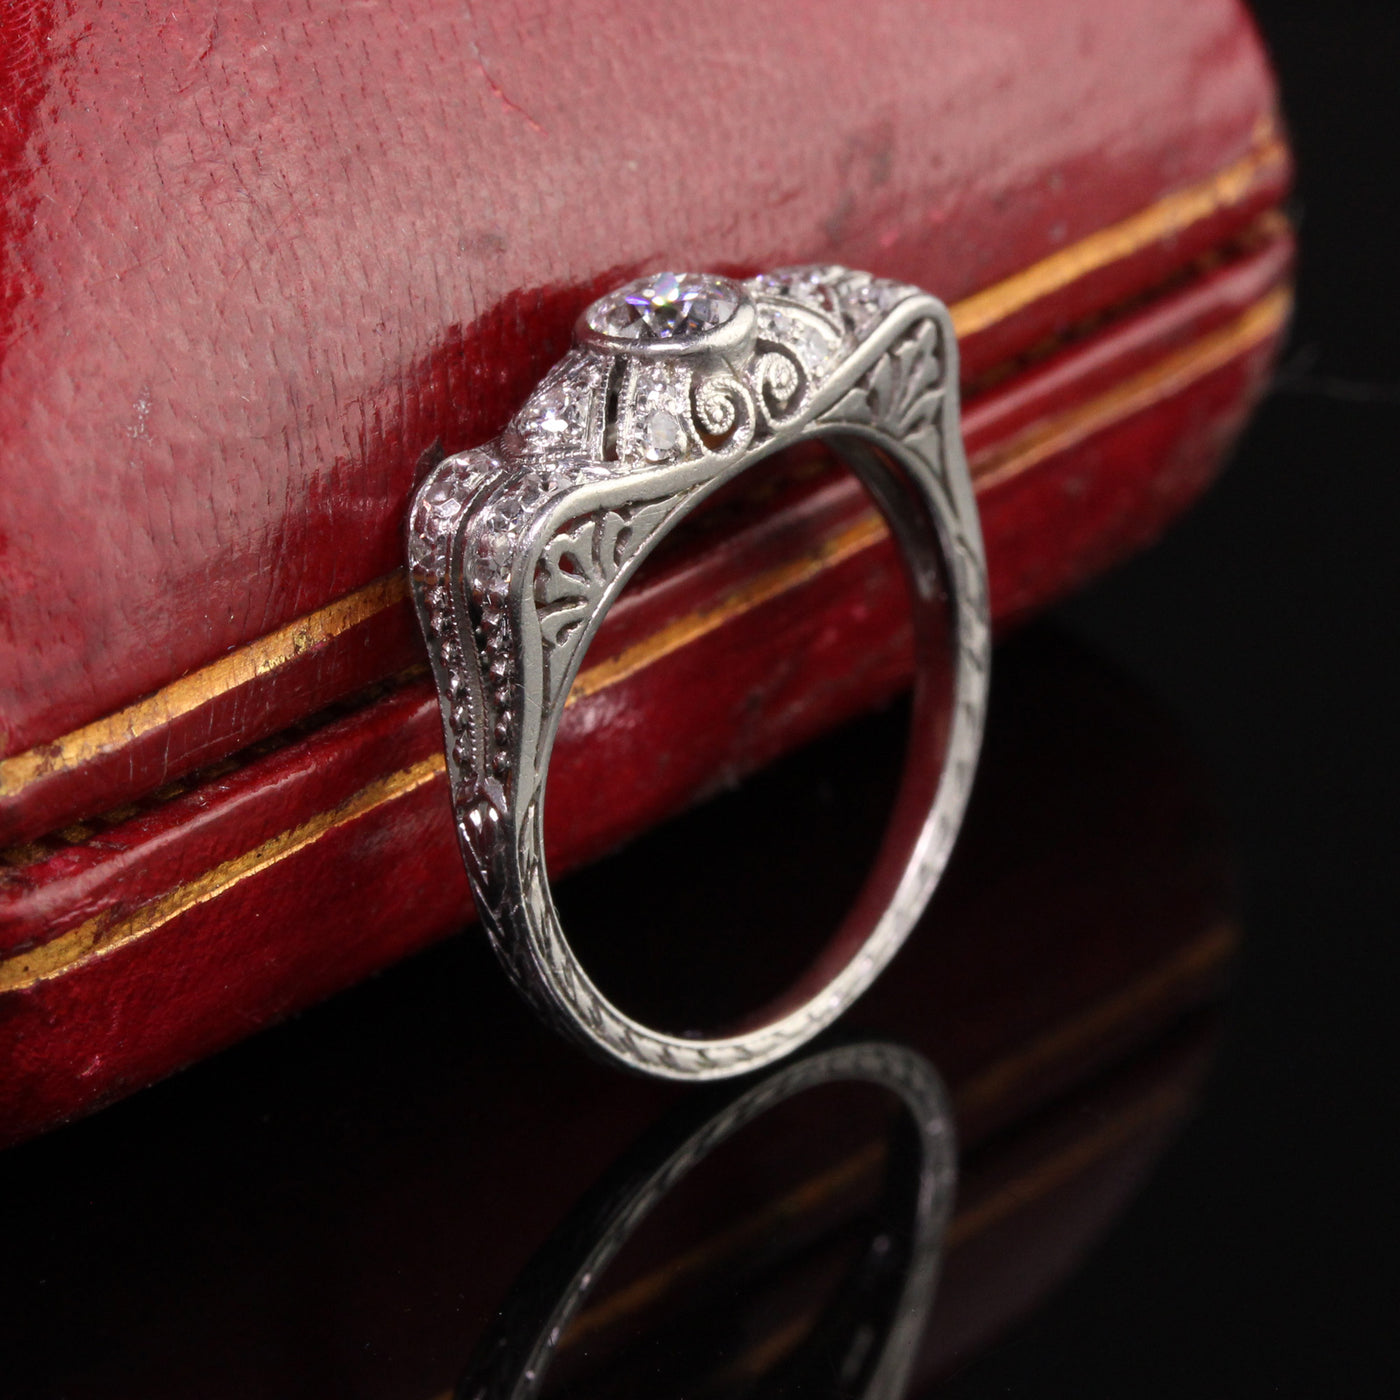 Antique Art Deco Platinum Old European Diamond Filigree Engagement Ring